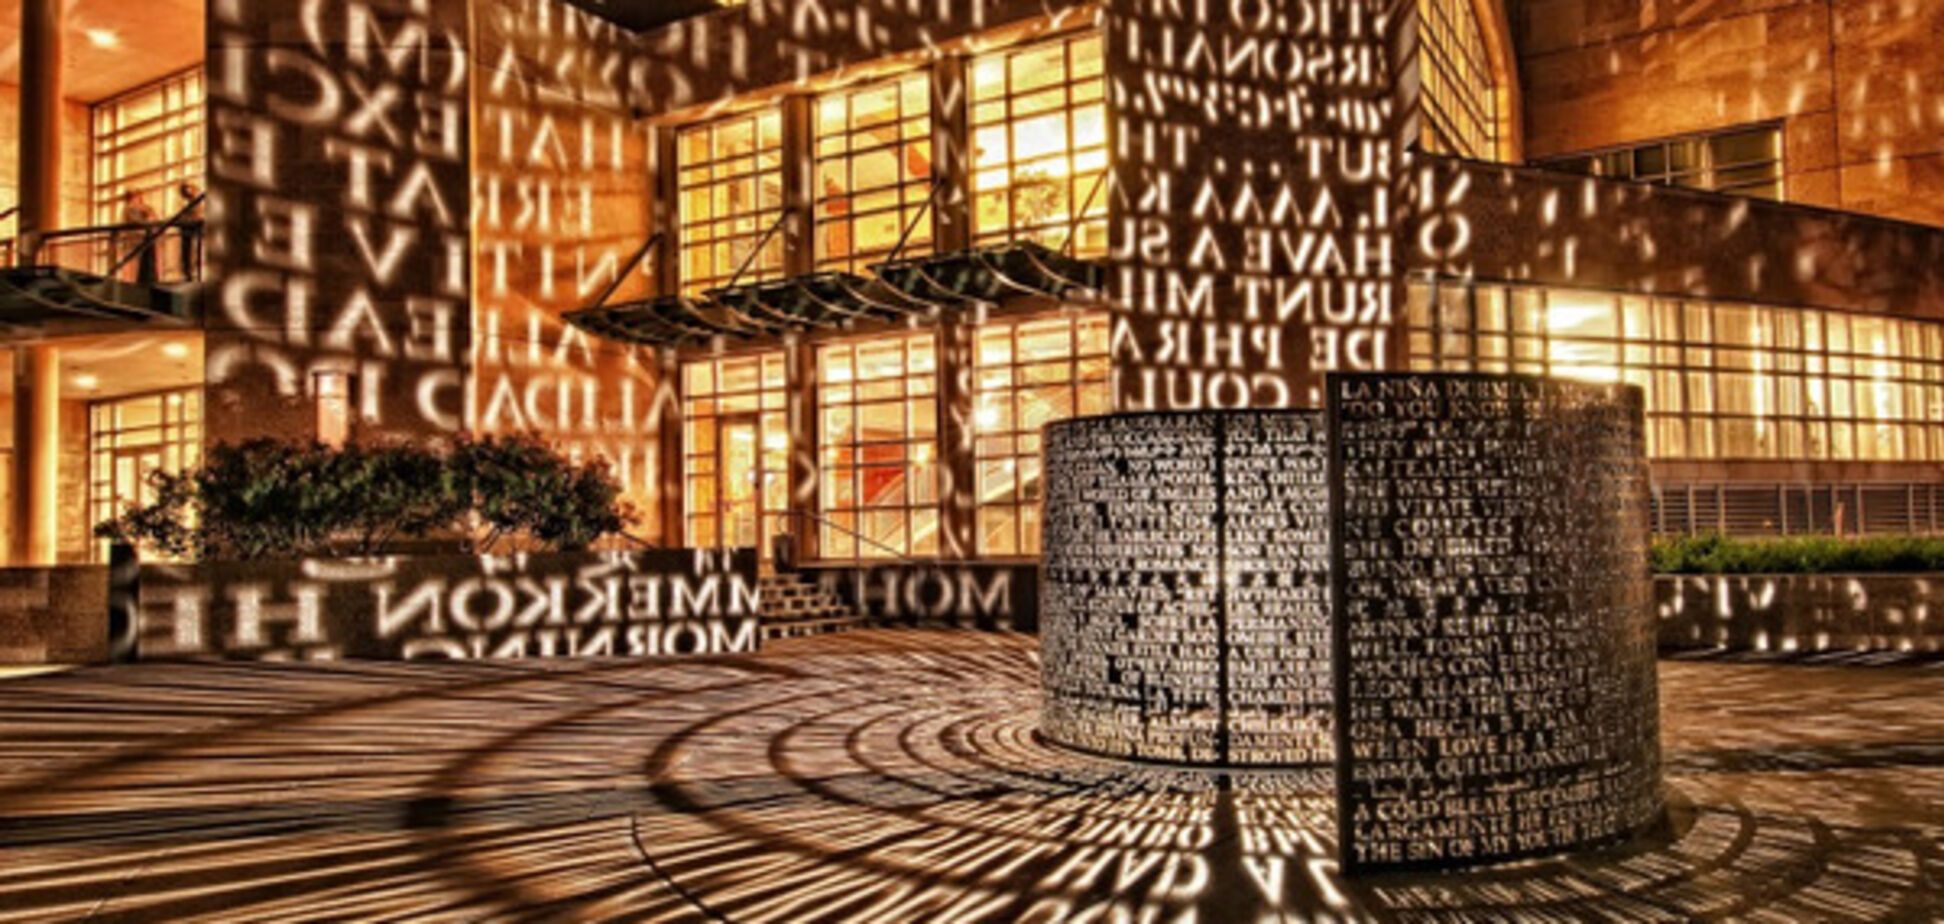 Скульптура из 4 секций с нанесенными на них зашифрованными символами перед штаб-квартирой ЦРУ